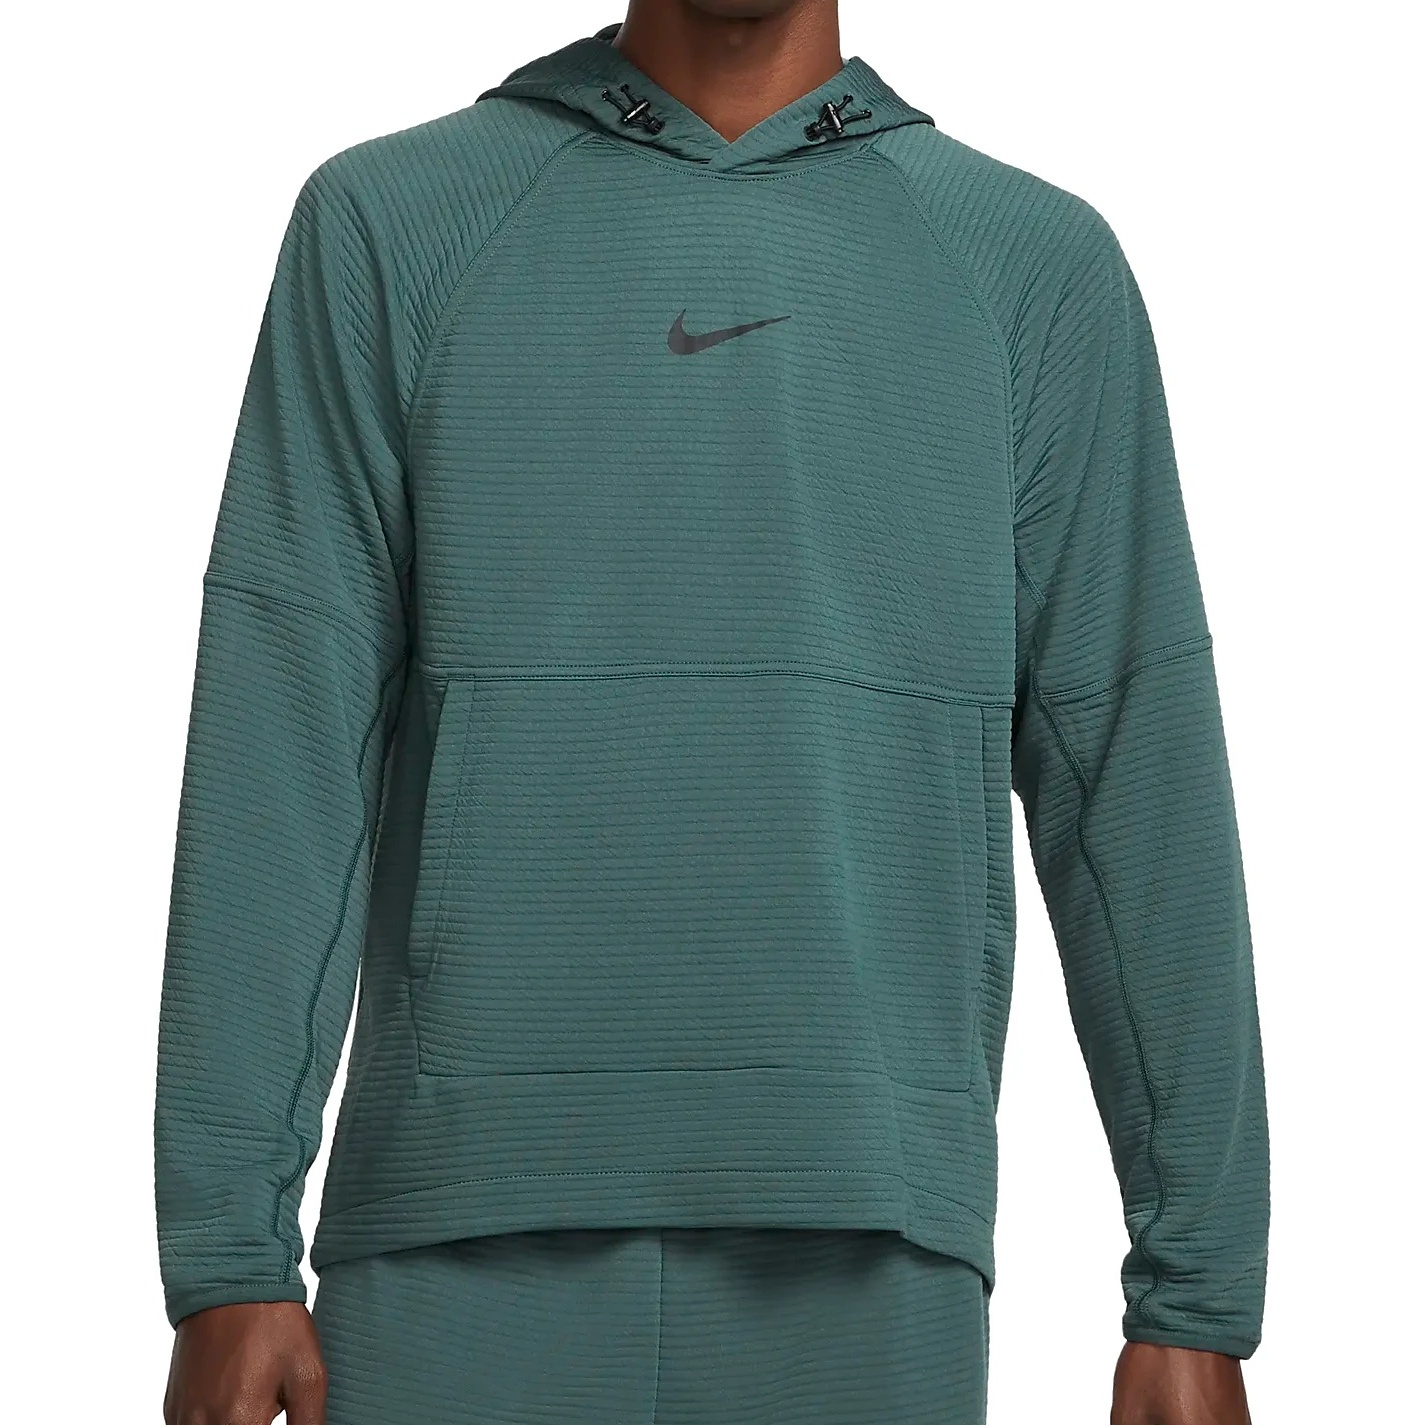 Produktbild von Nike Pro Dri-FIT Fleece-Fitness-Pullover für Herren - faded spruce/black DV9821-309